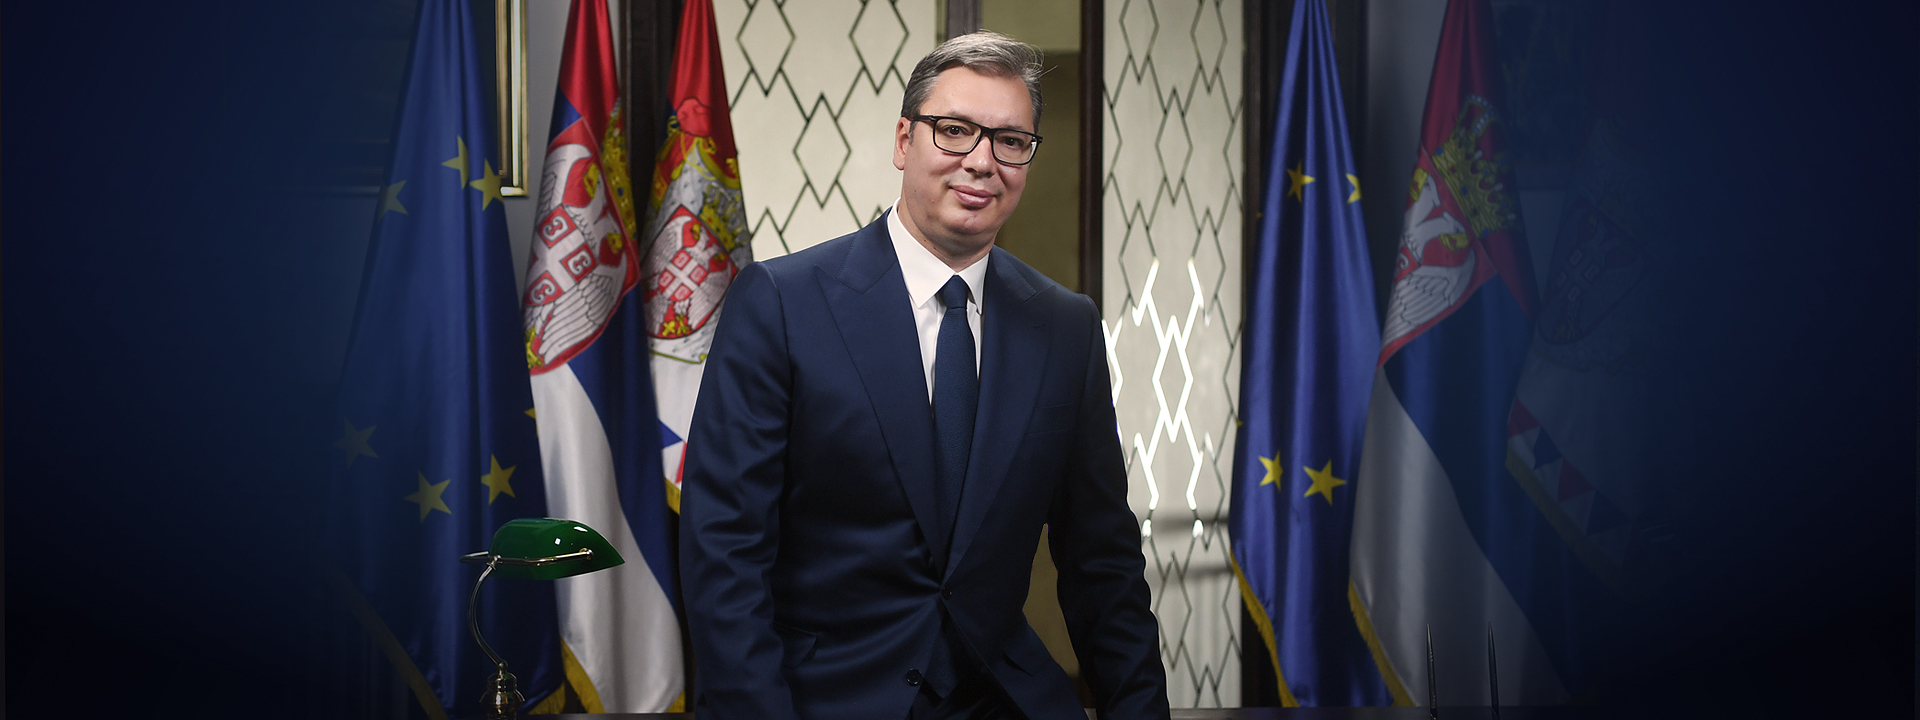 Predsednik Srbije: Moraćemo da ulažemo u nove izvore energije - treba nam nekoliko milijardi evra